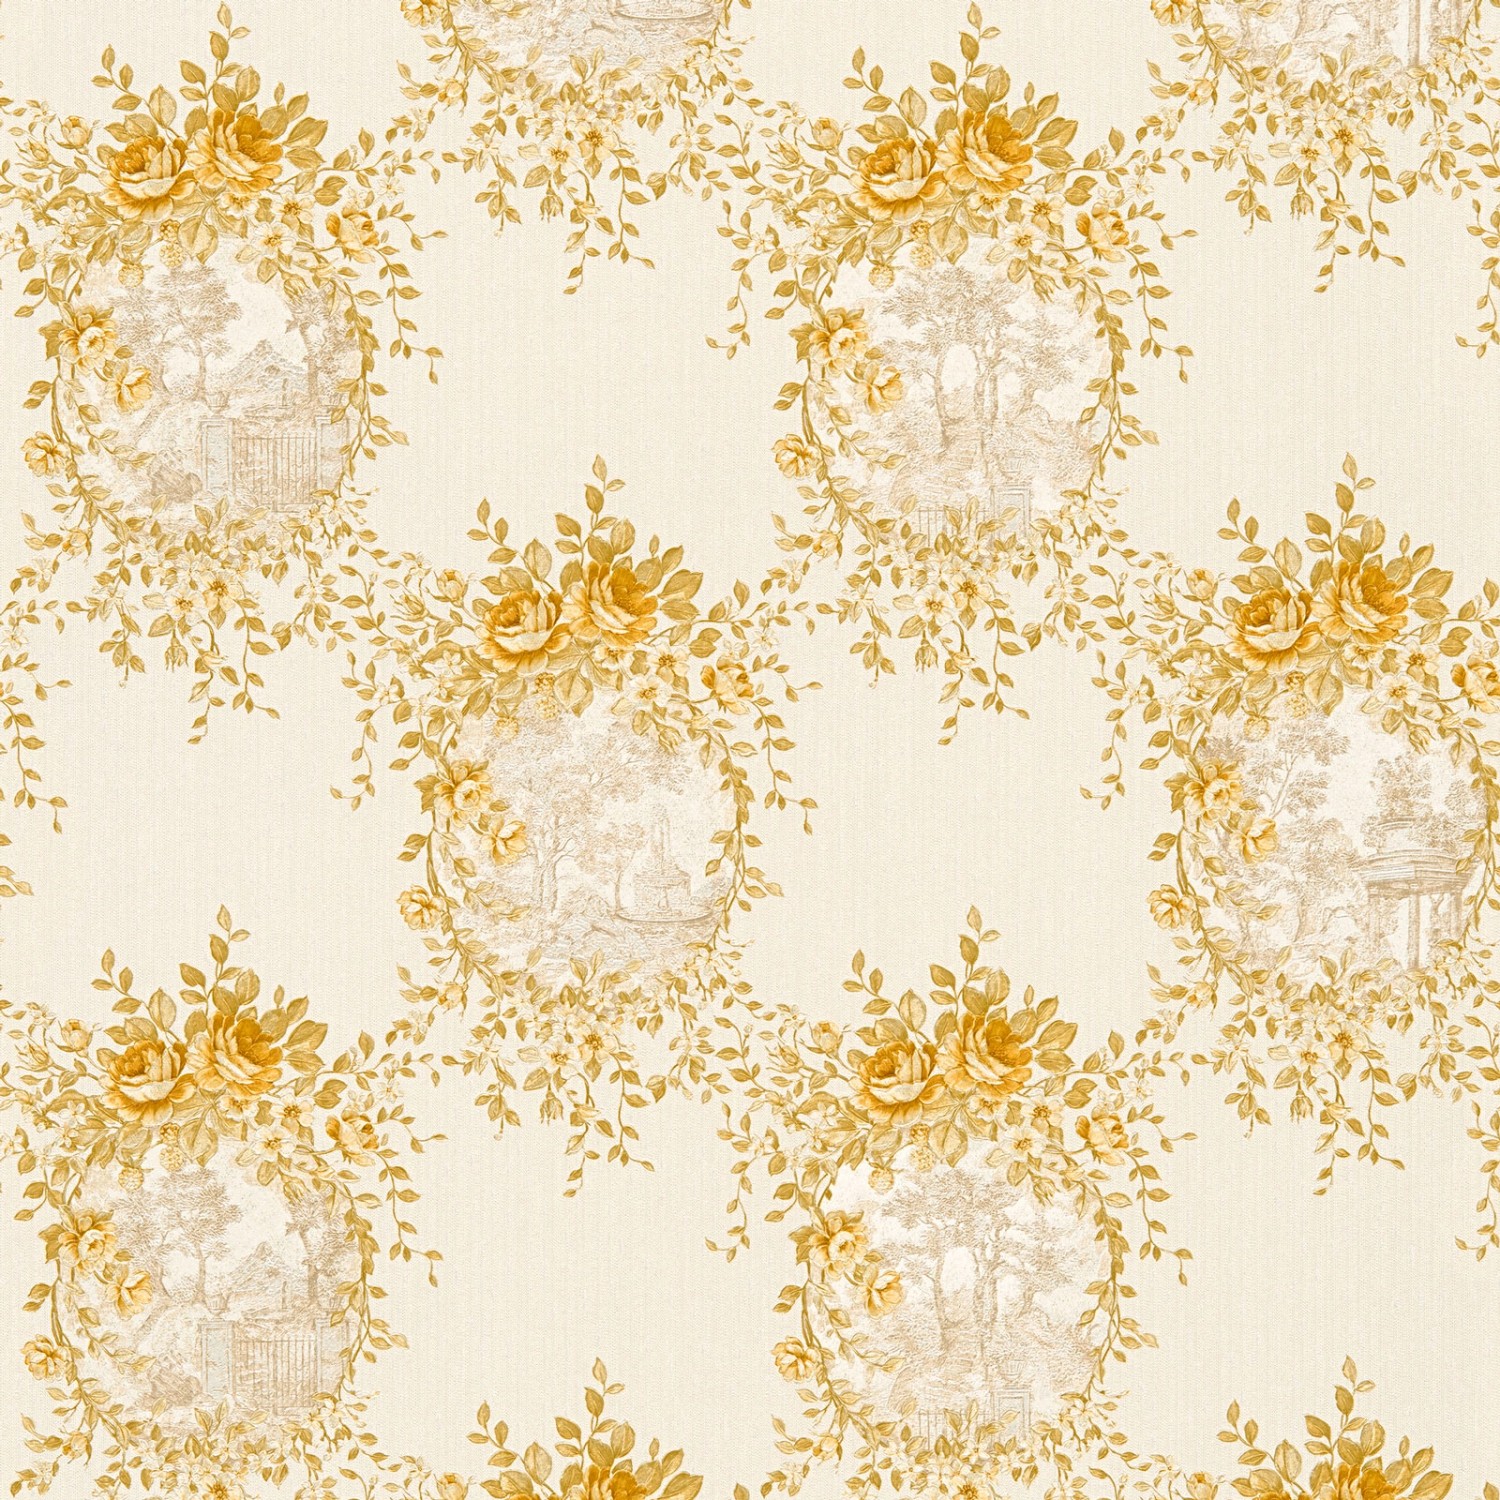 Bricoflor Vintage Tapete Gold Gelb Blumen Vliestapete mit Rosen im Landhausstil Nostalgische Landhaus Blumentapete Ideal